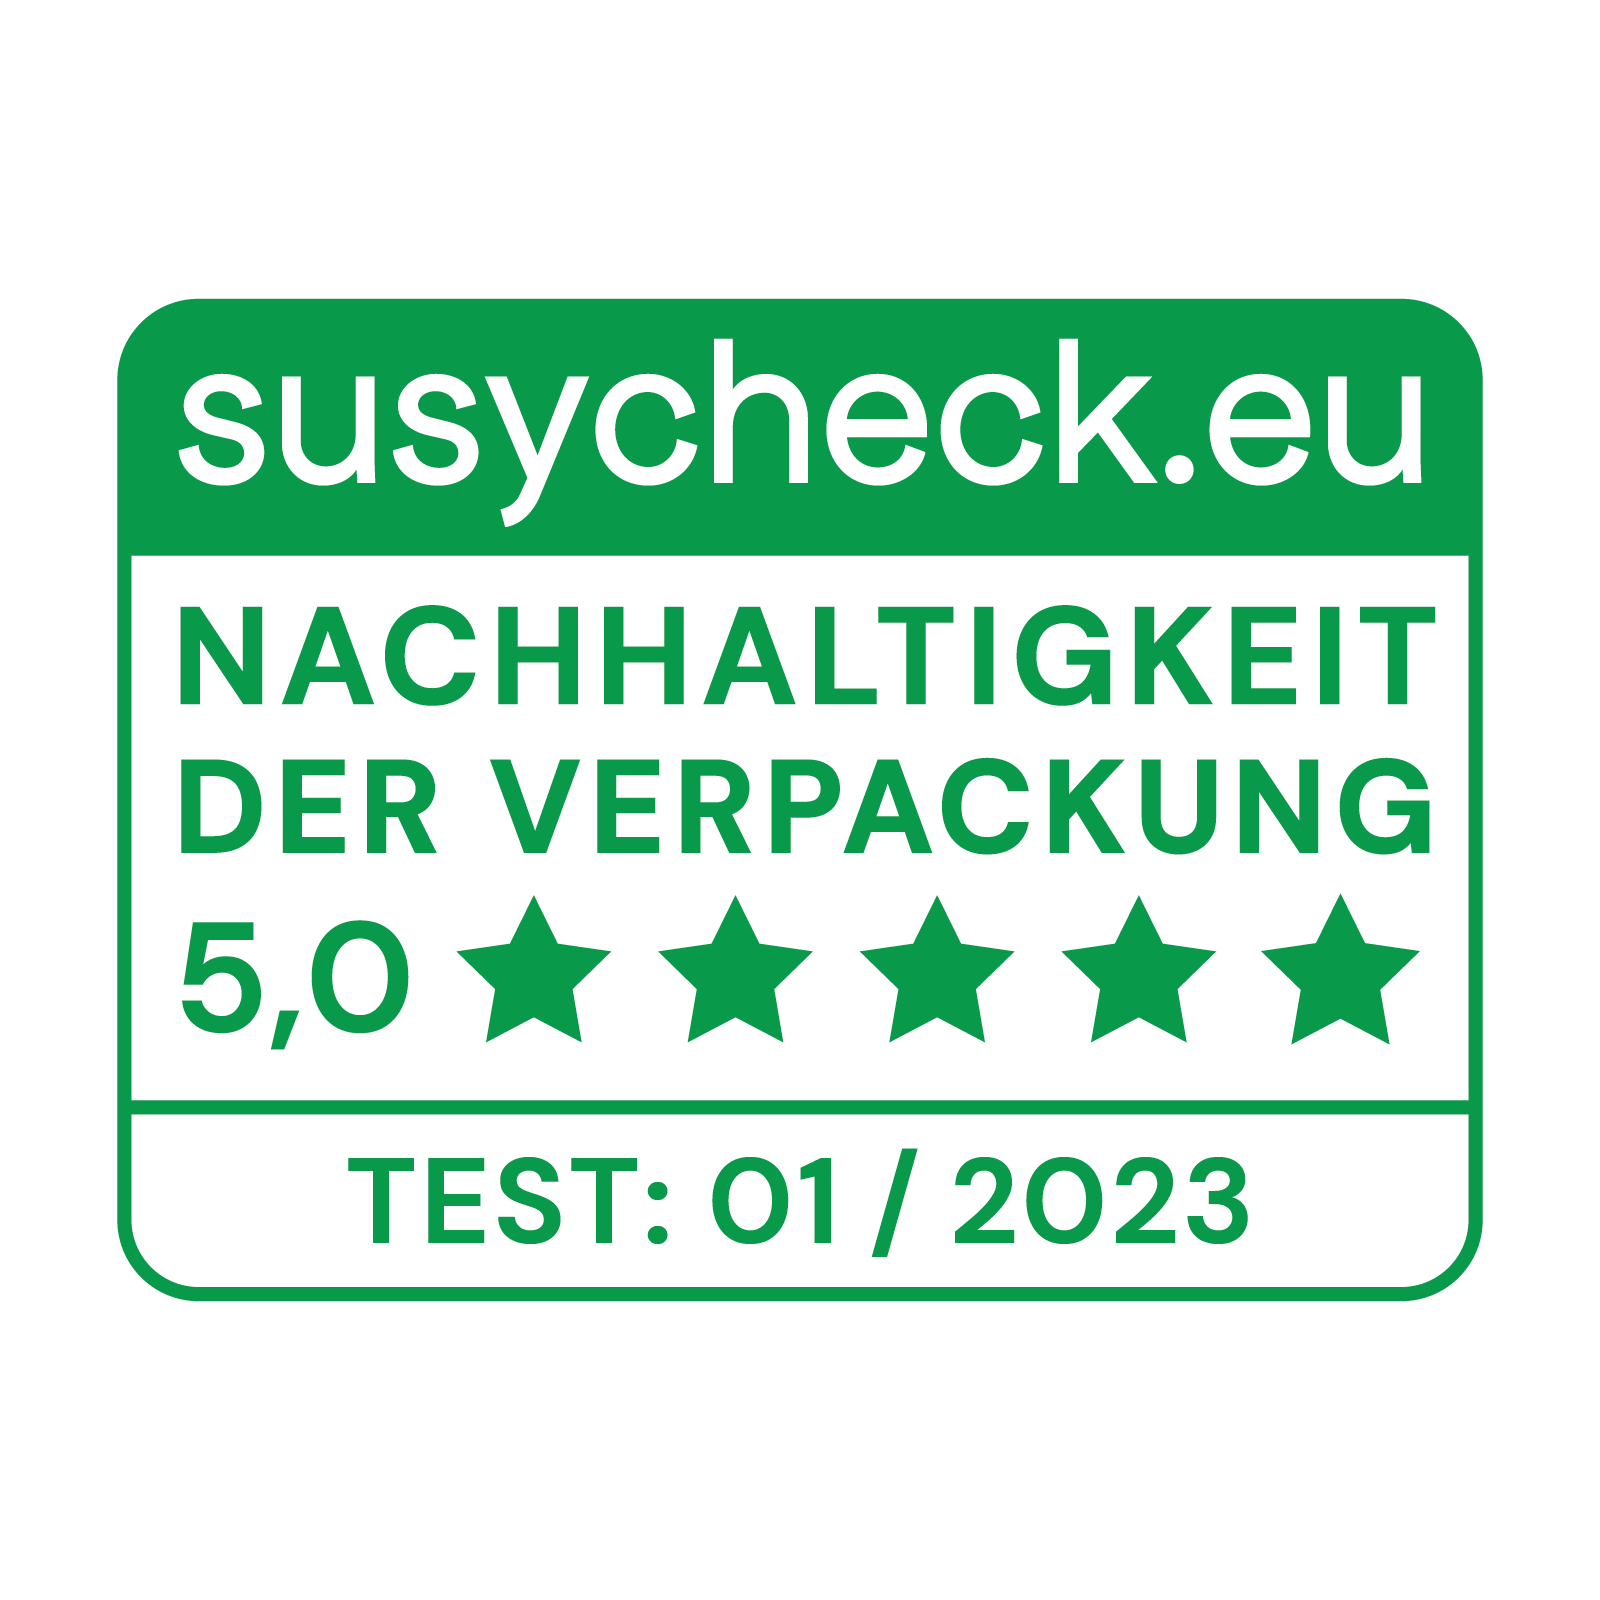 (c) Susycheck.eu